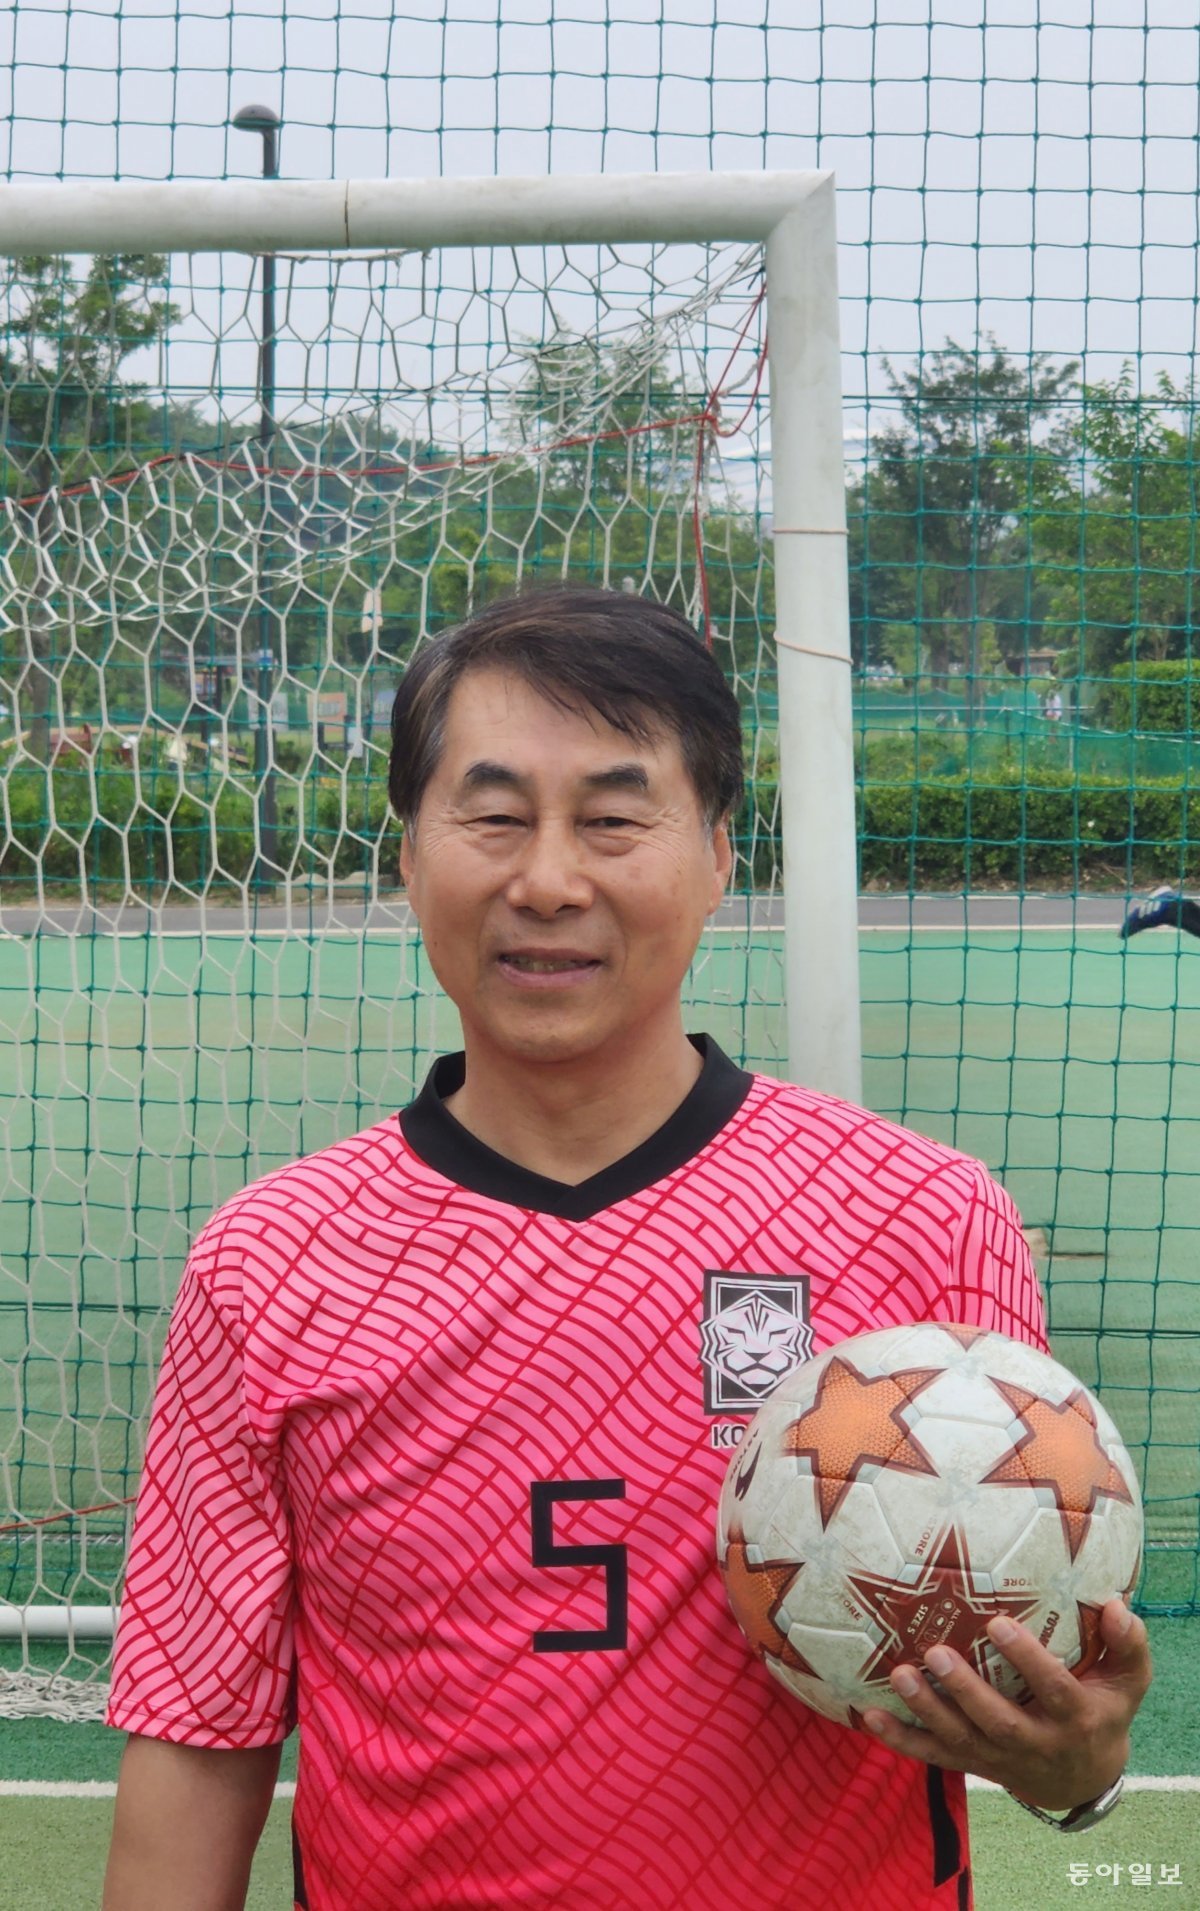 초대 월드내셔널컵에 출전하는 한국 대표팀을 이끄는 김강남 감독.